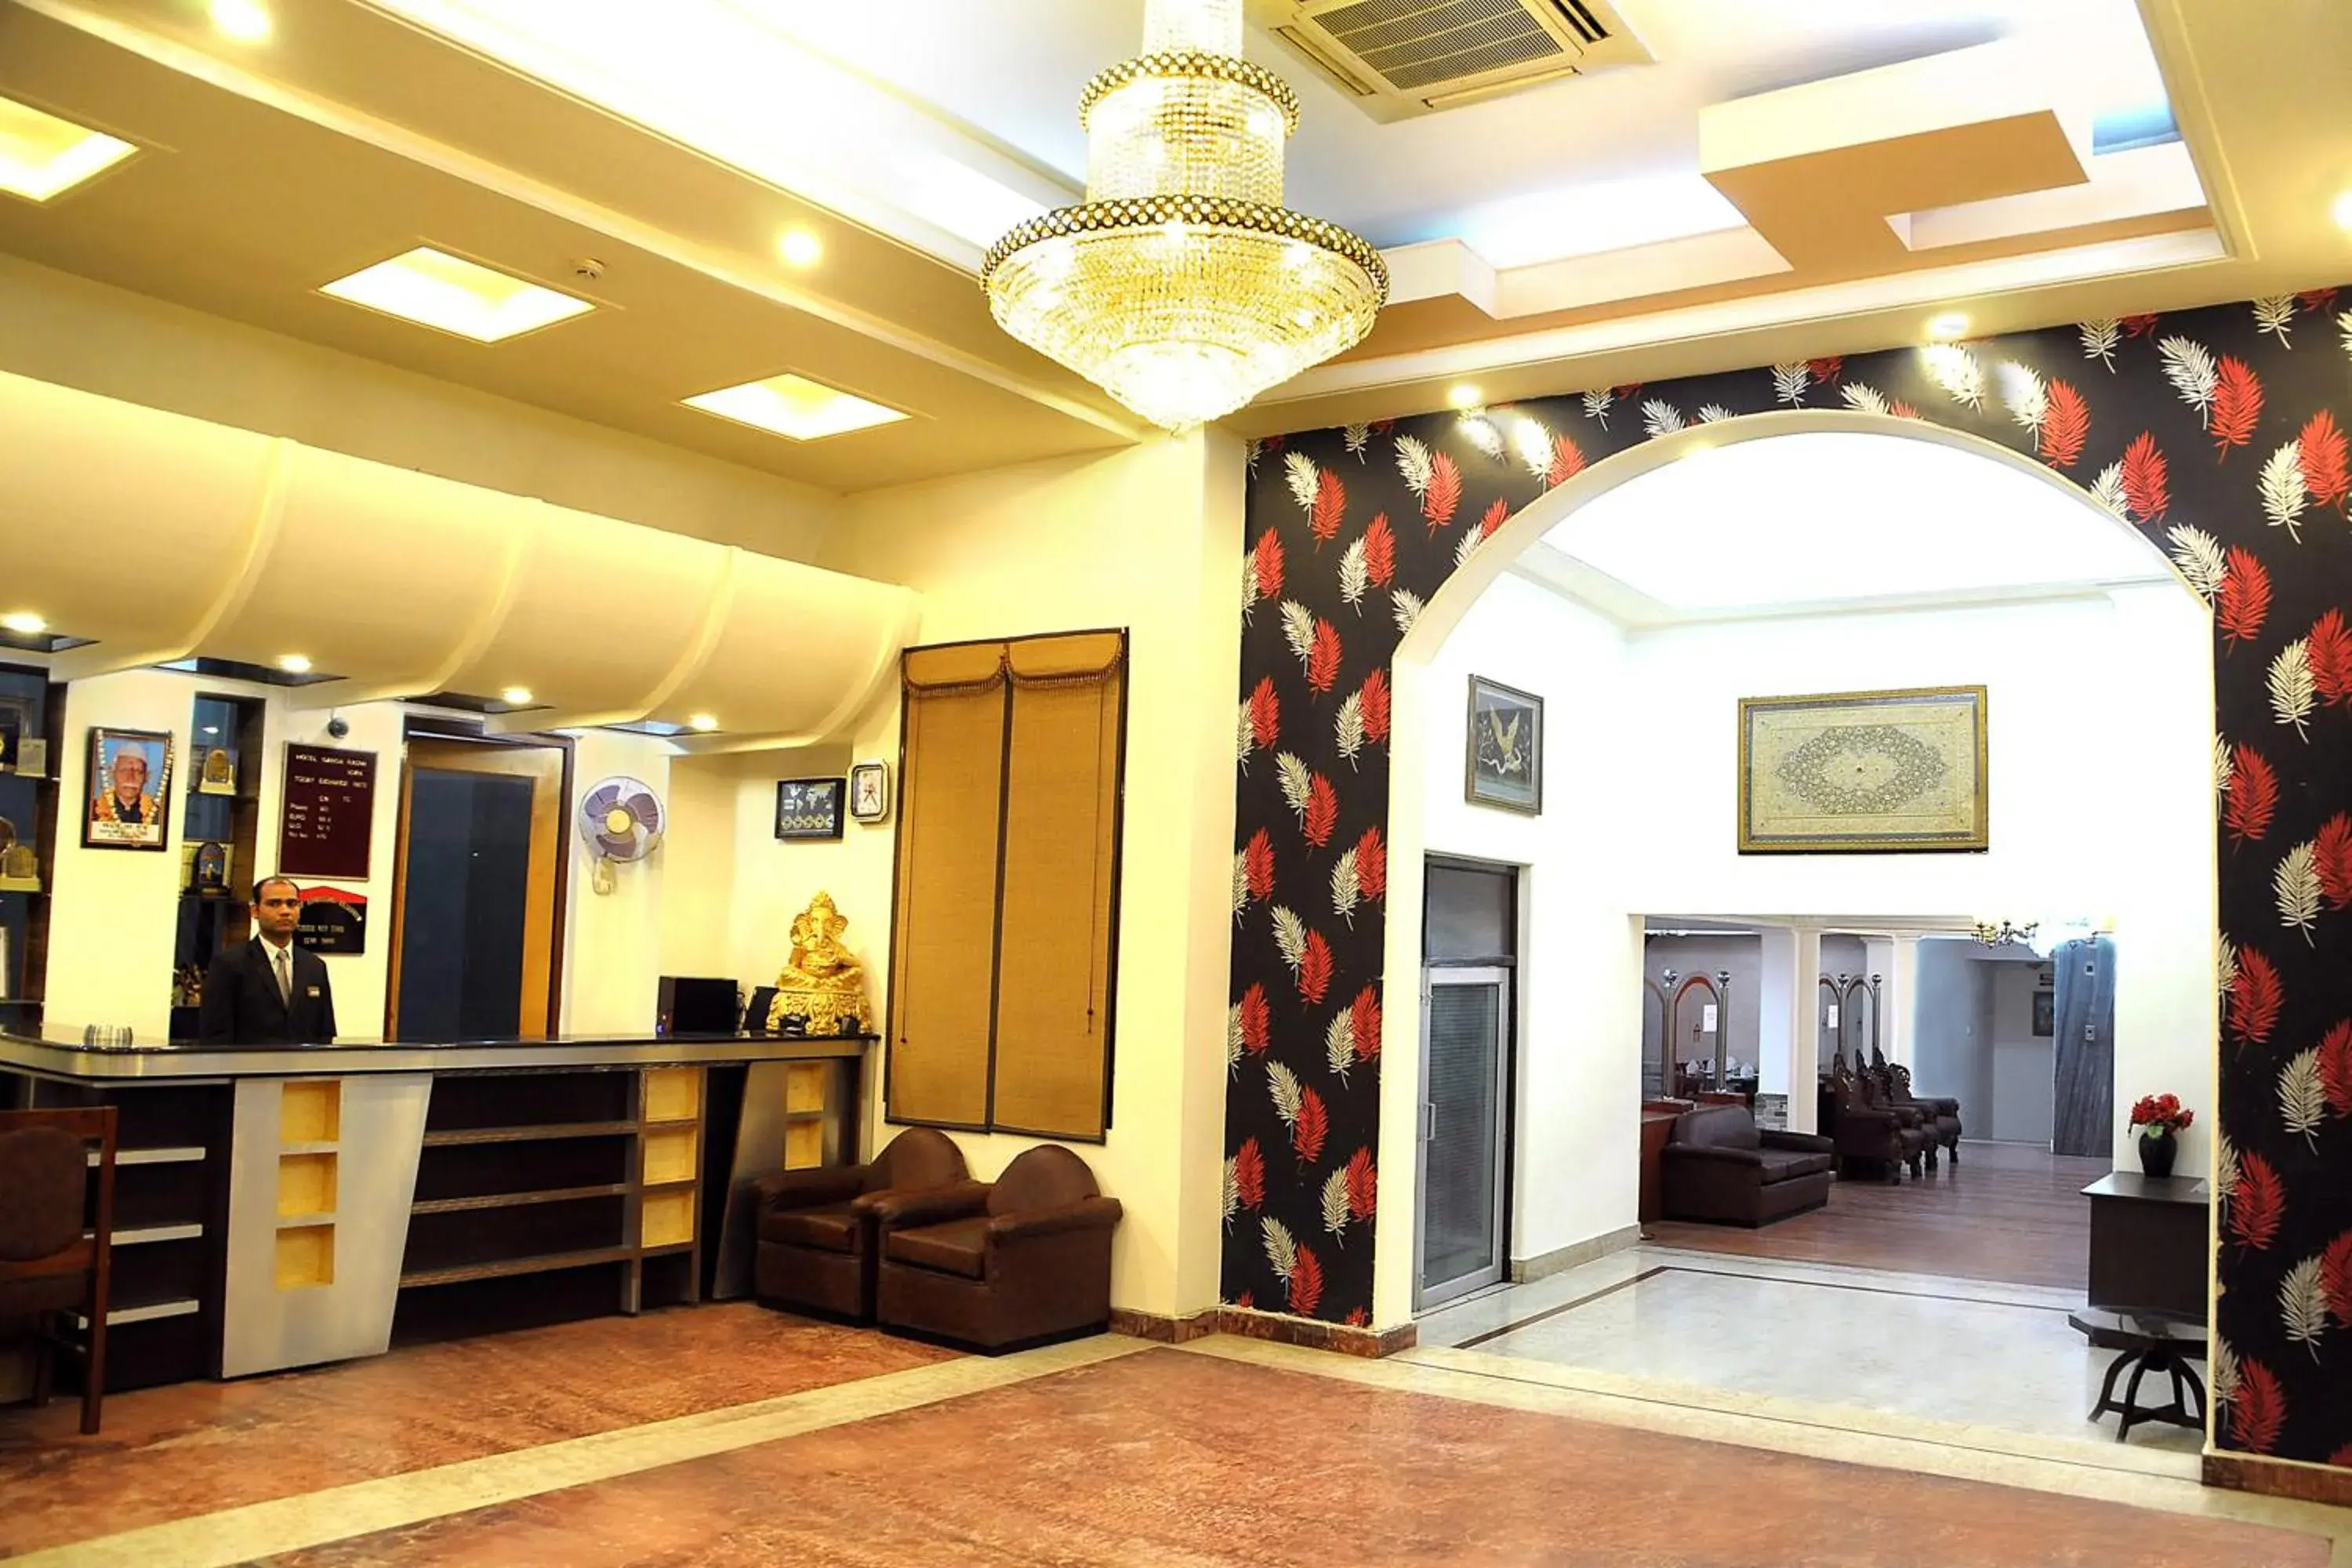 Lobby or reception, Lobby/Reception in Hotel Ganga Ratan